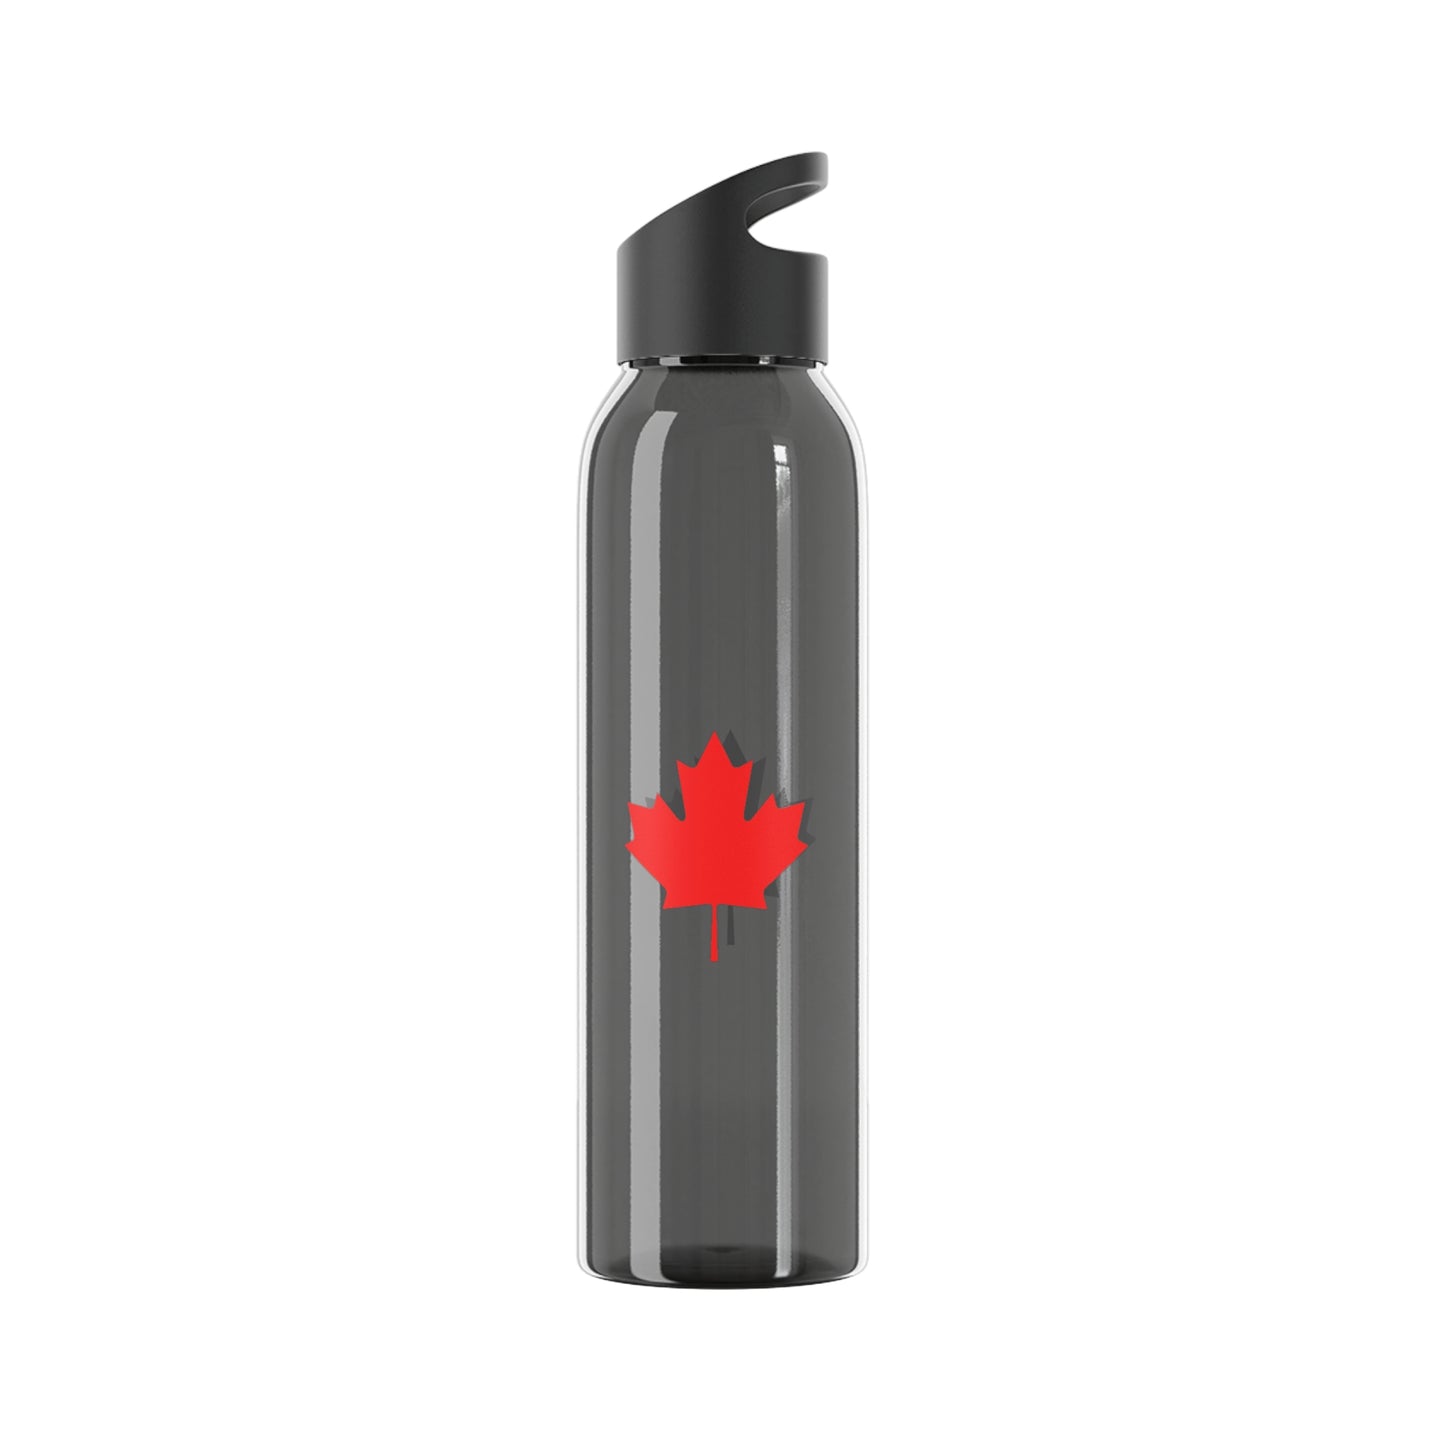 Canadian Maple Leaf, Sky Water Bottle